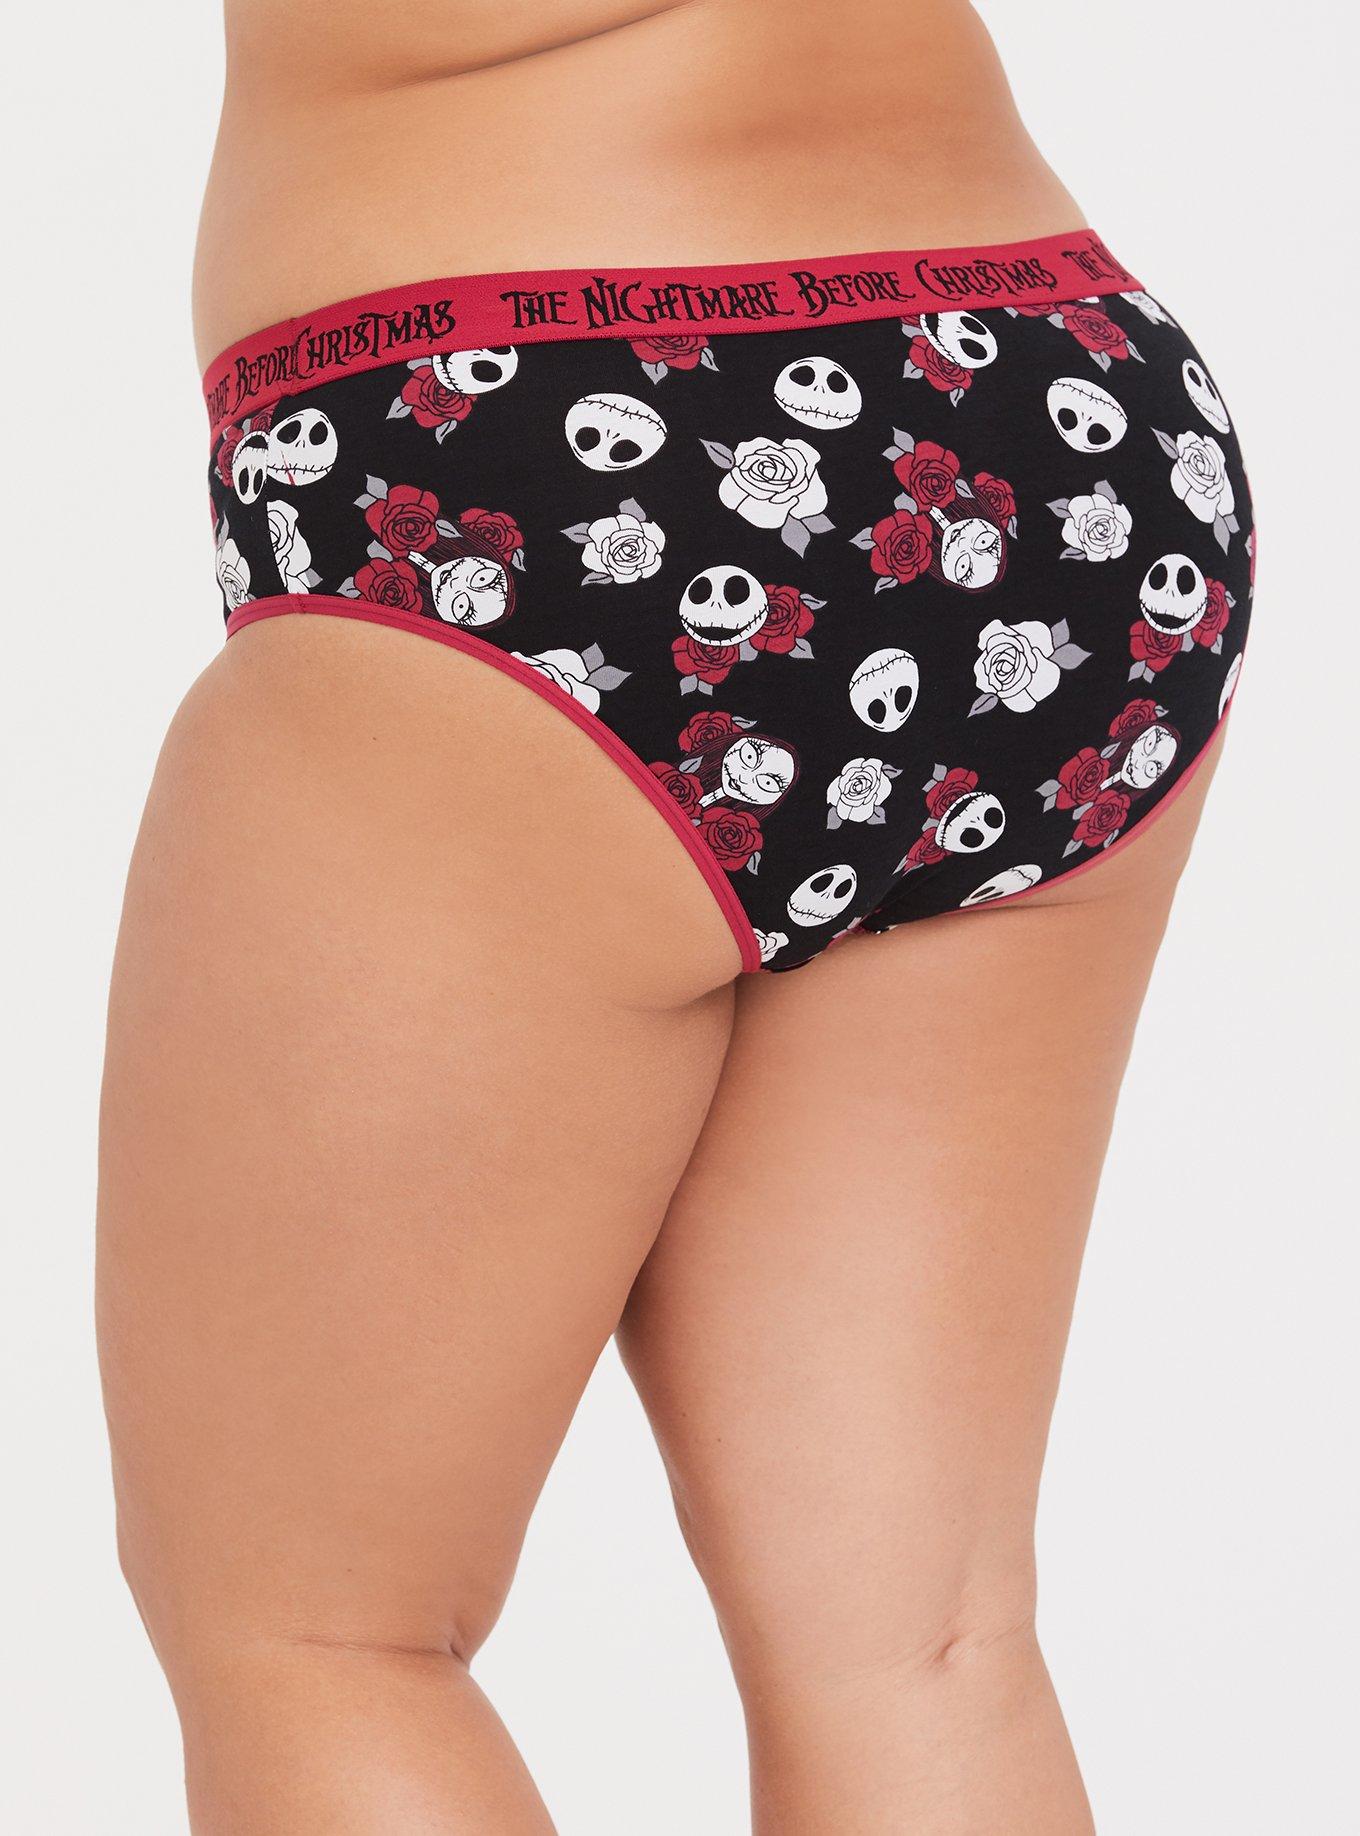 Torrid Thong Panties Underwear Disney Marvel Deadpool Tacos Plus Size 2 18  / 20 